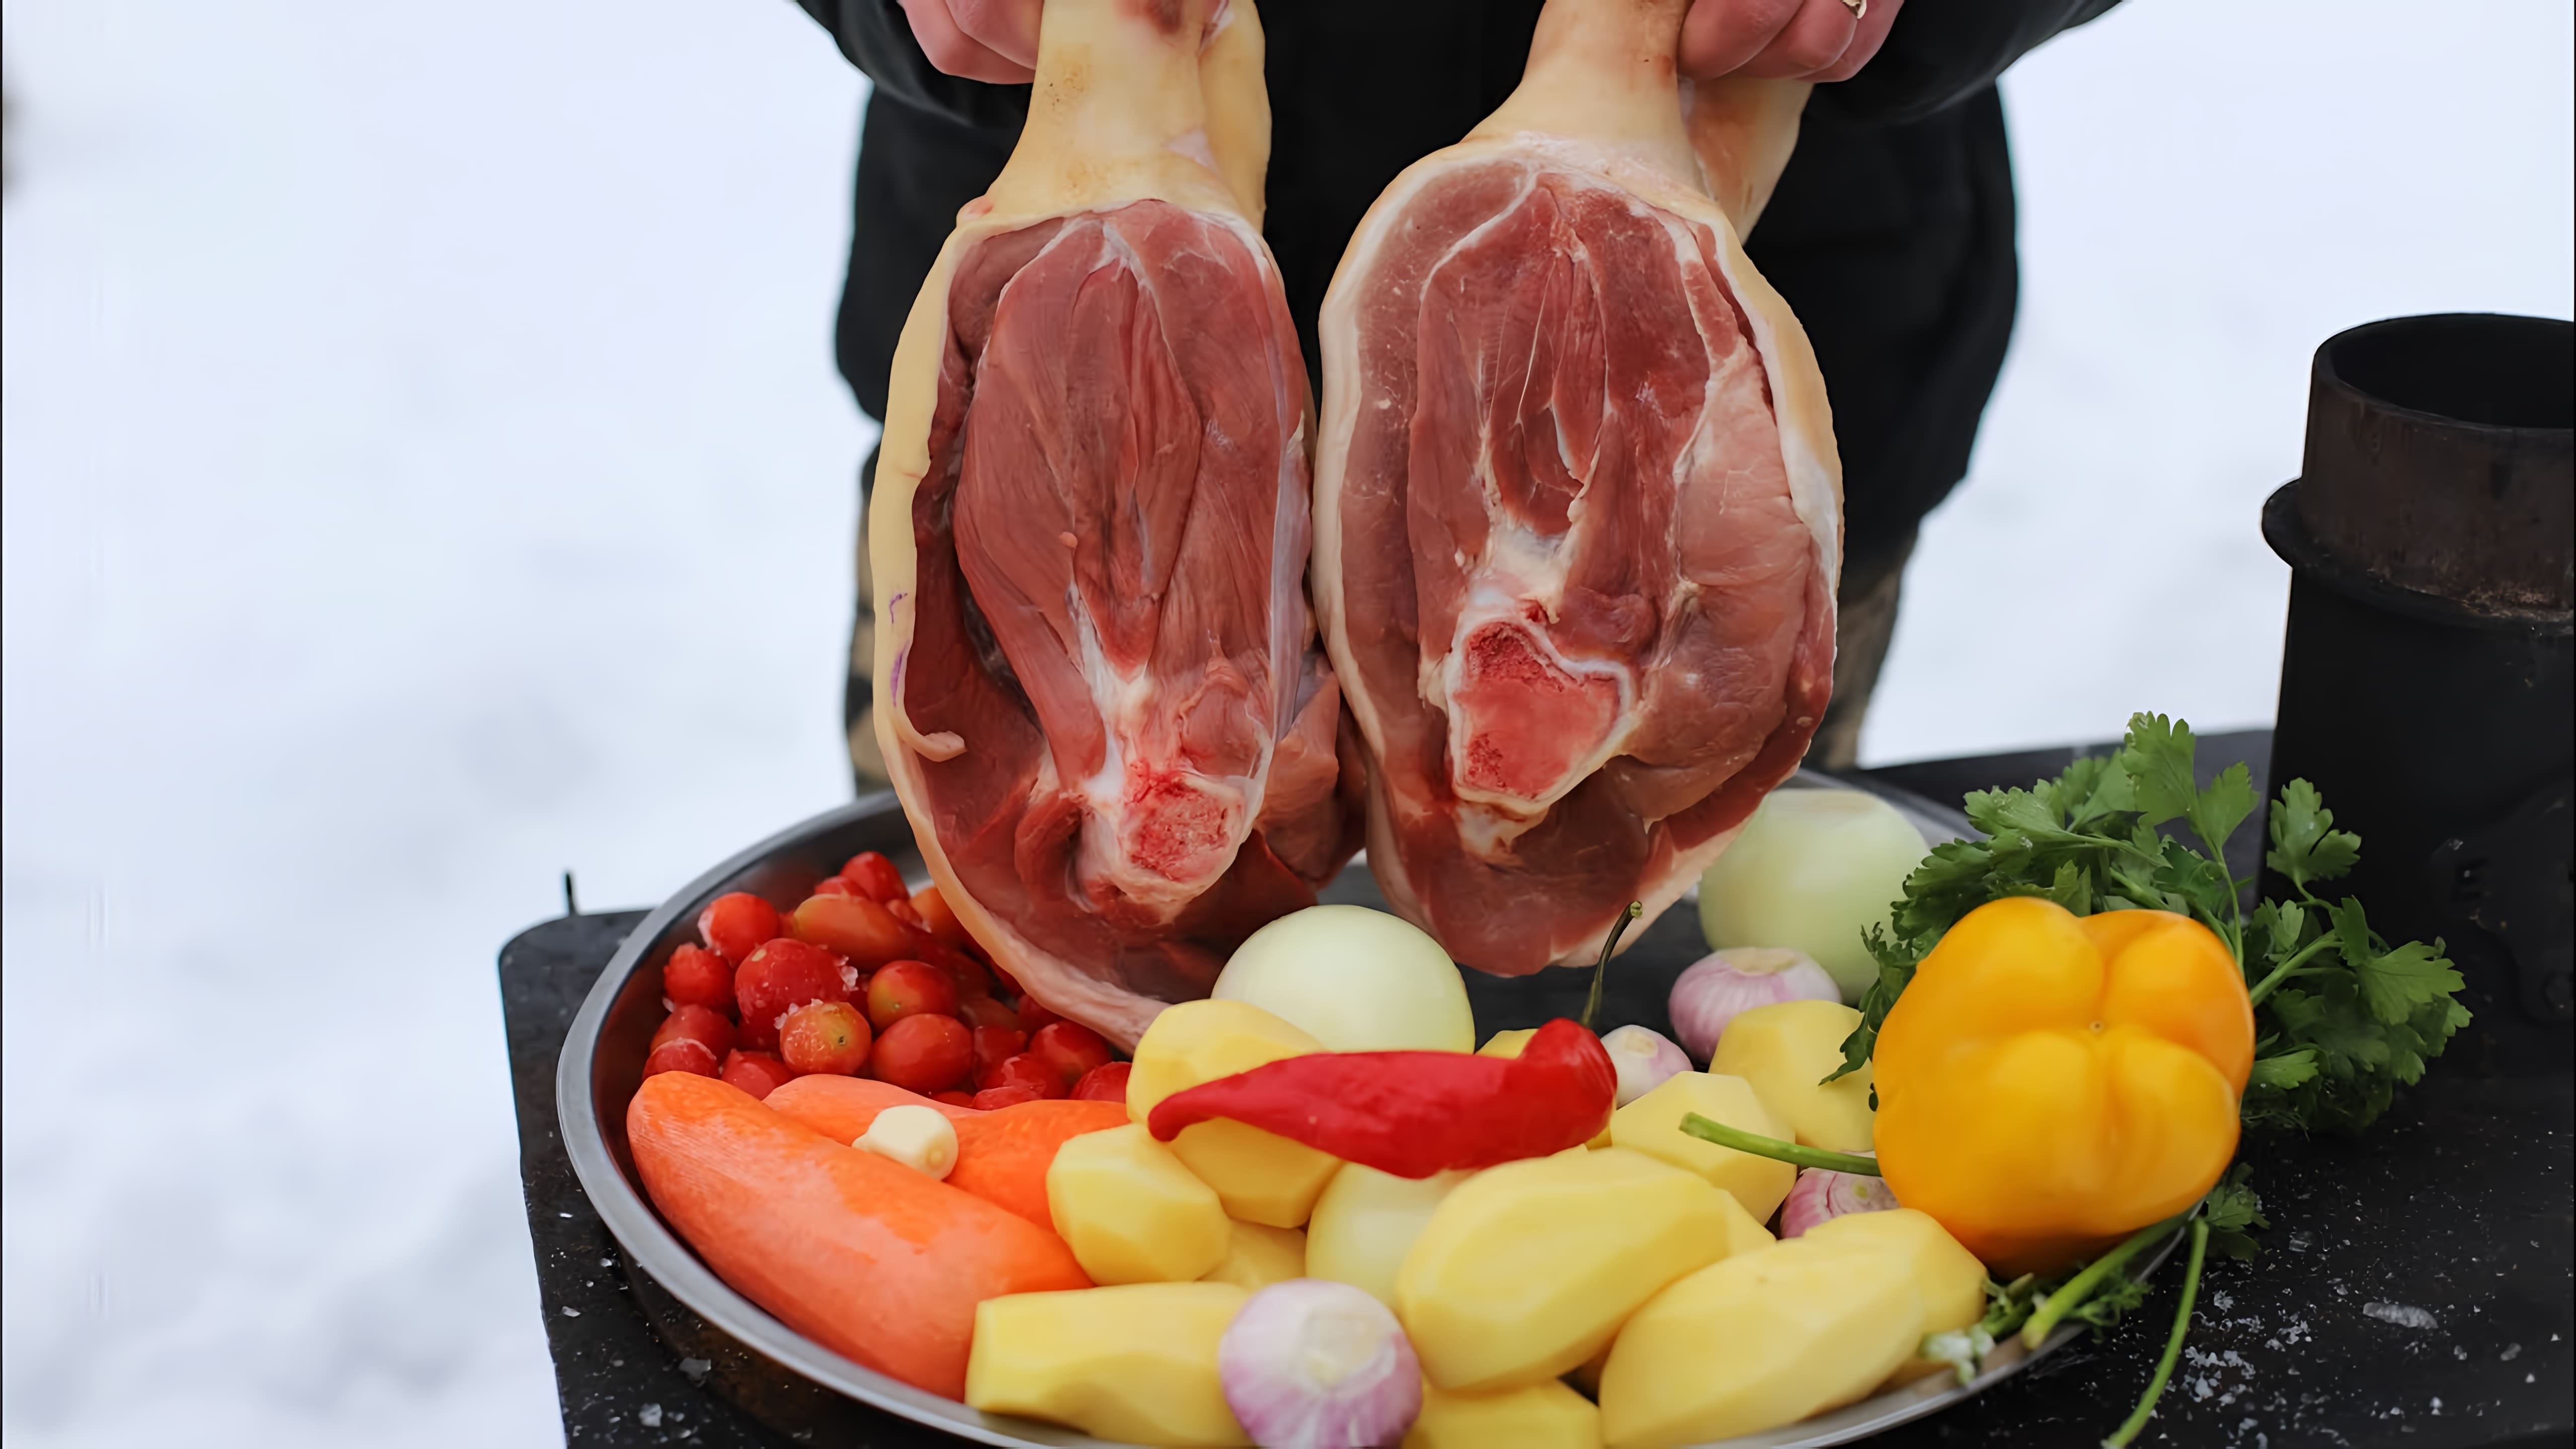 В этом видео демонстрируется процесс приготовления свиных рулек с овощами в афганском казане